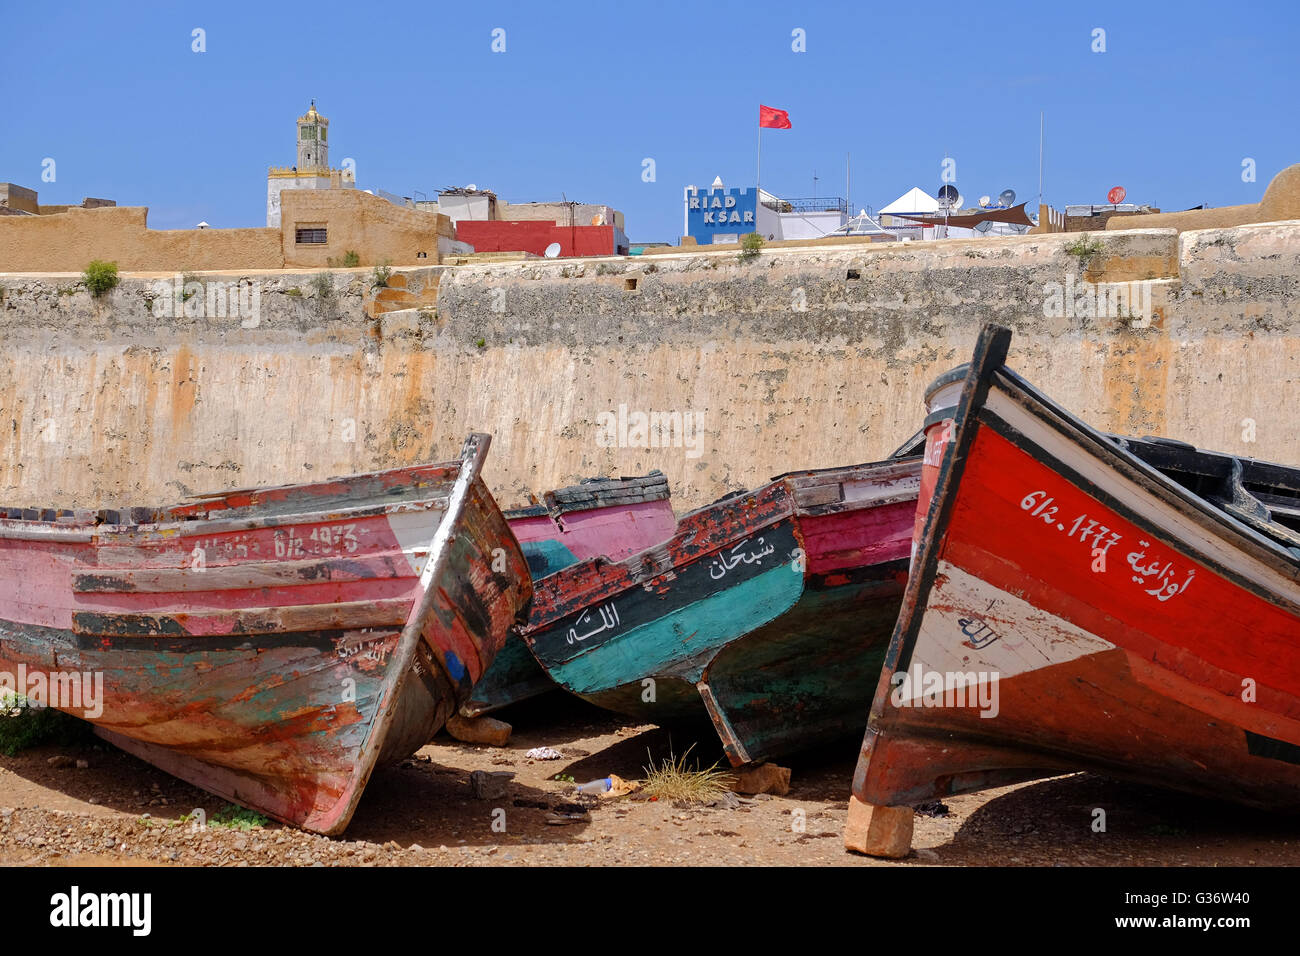 Bateaux de pêche en bois , El Jadida, Maroc Banque D'Images